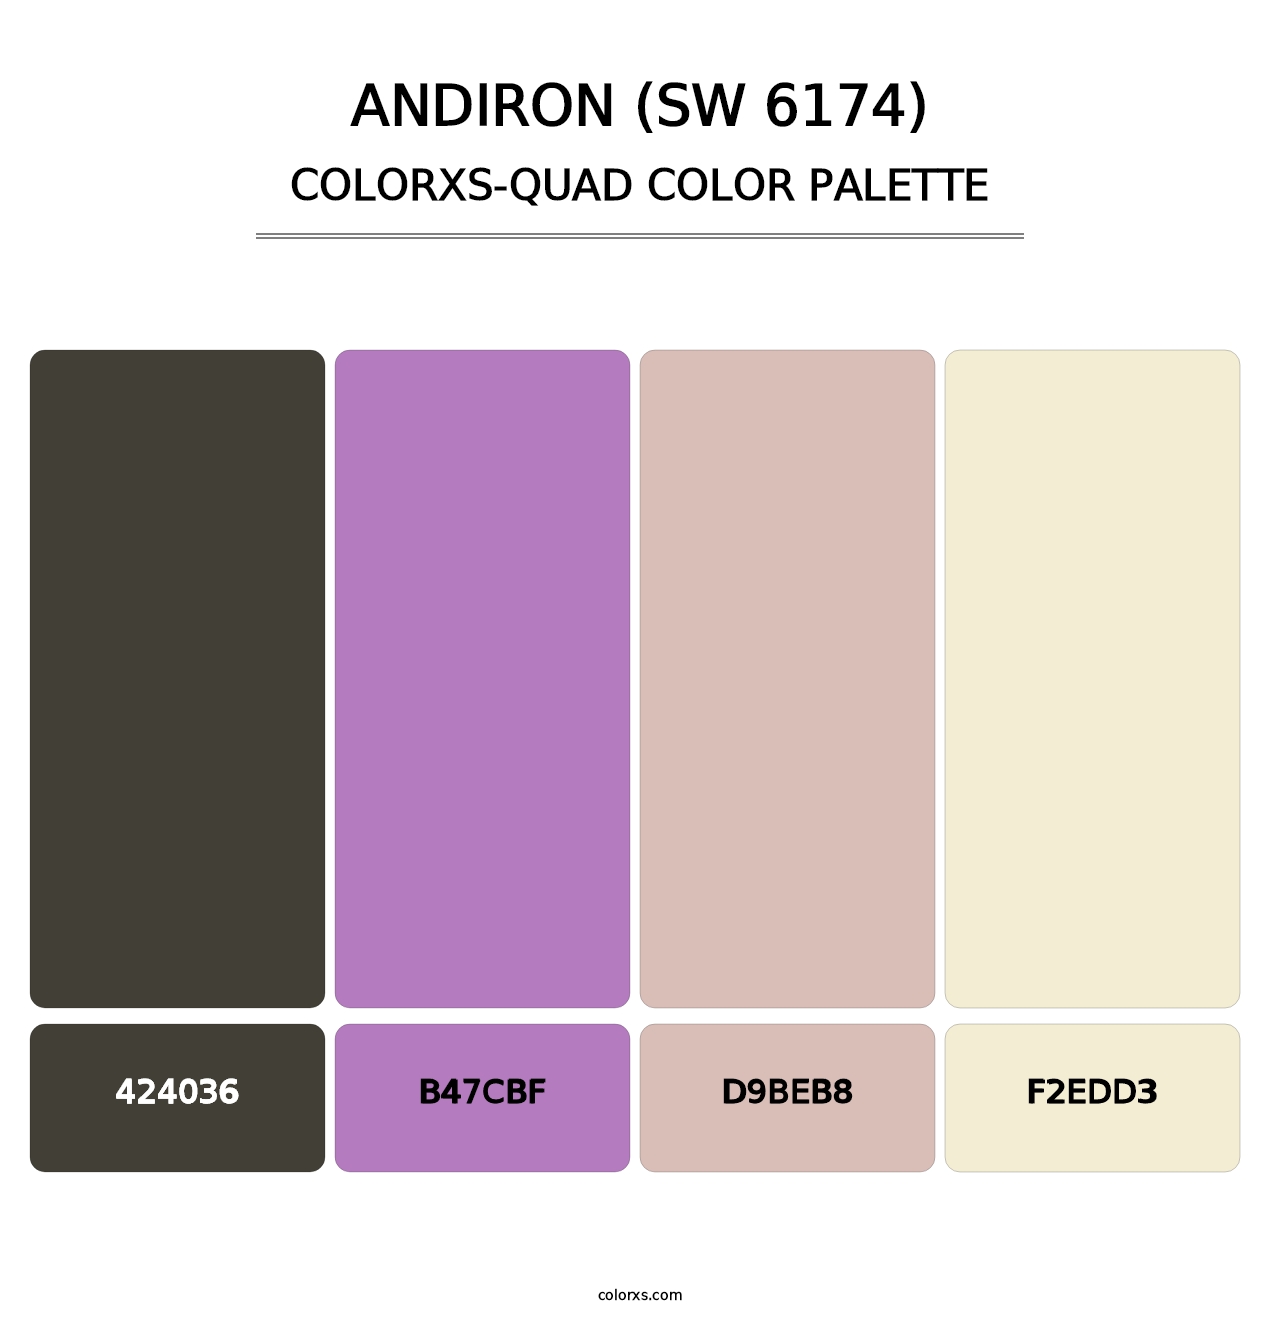 Andiron (SW 6174) - Colorxs Quad Palette